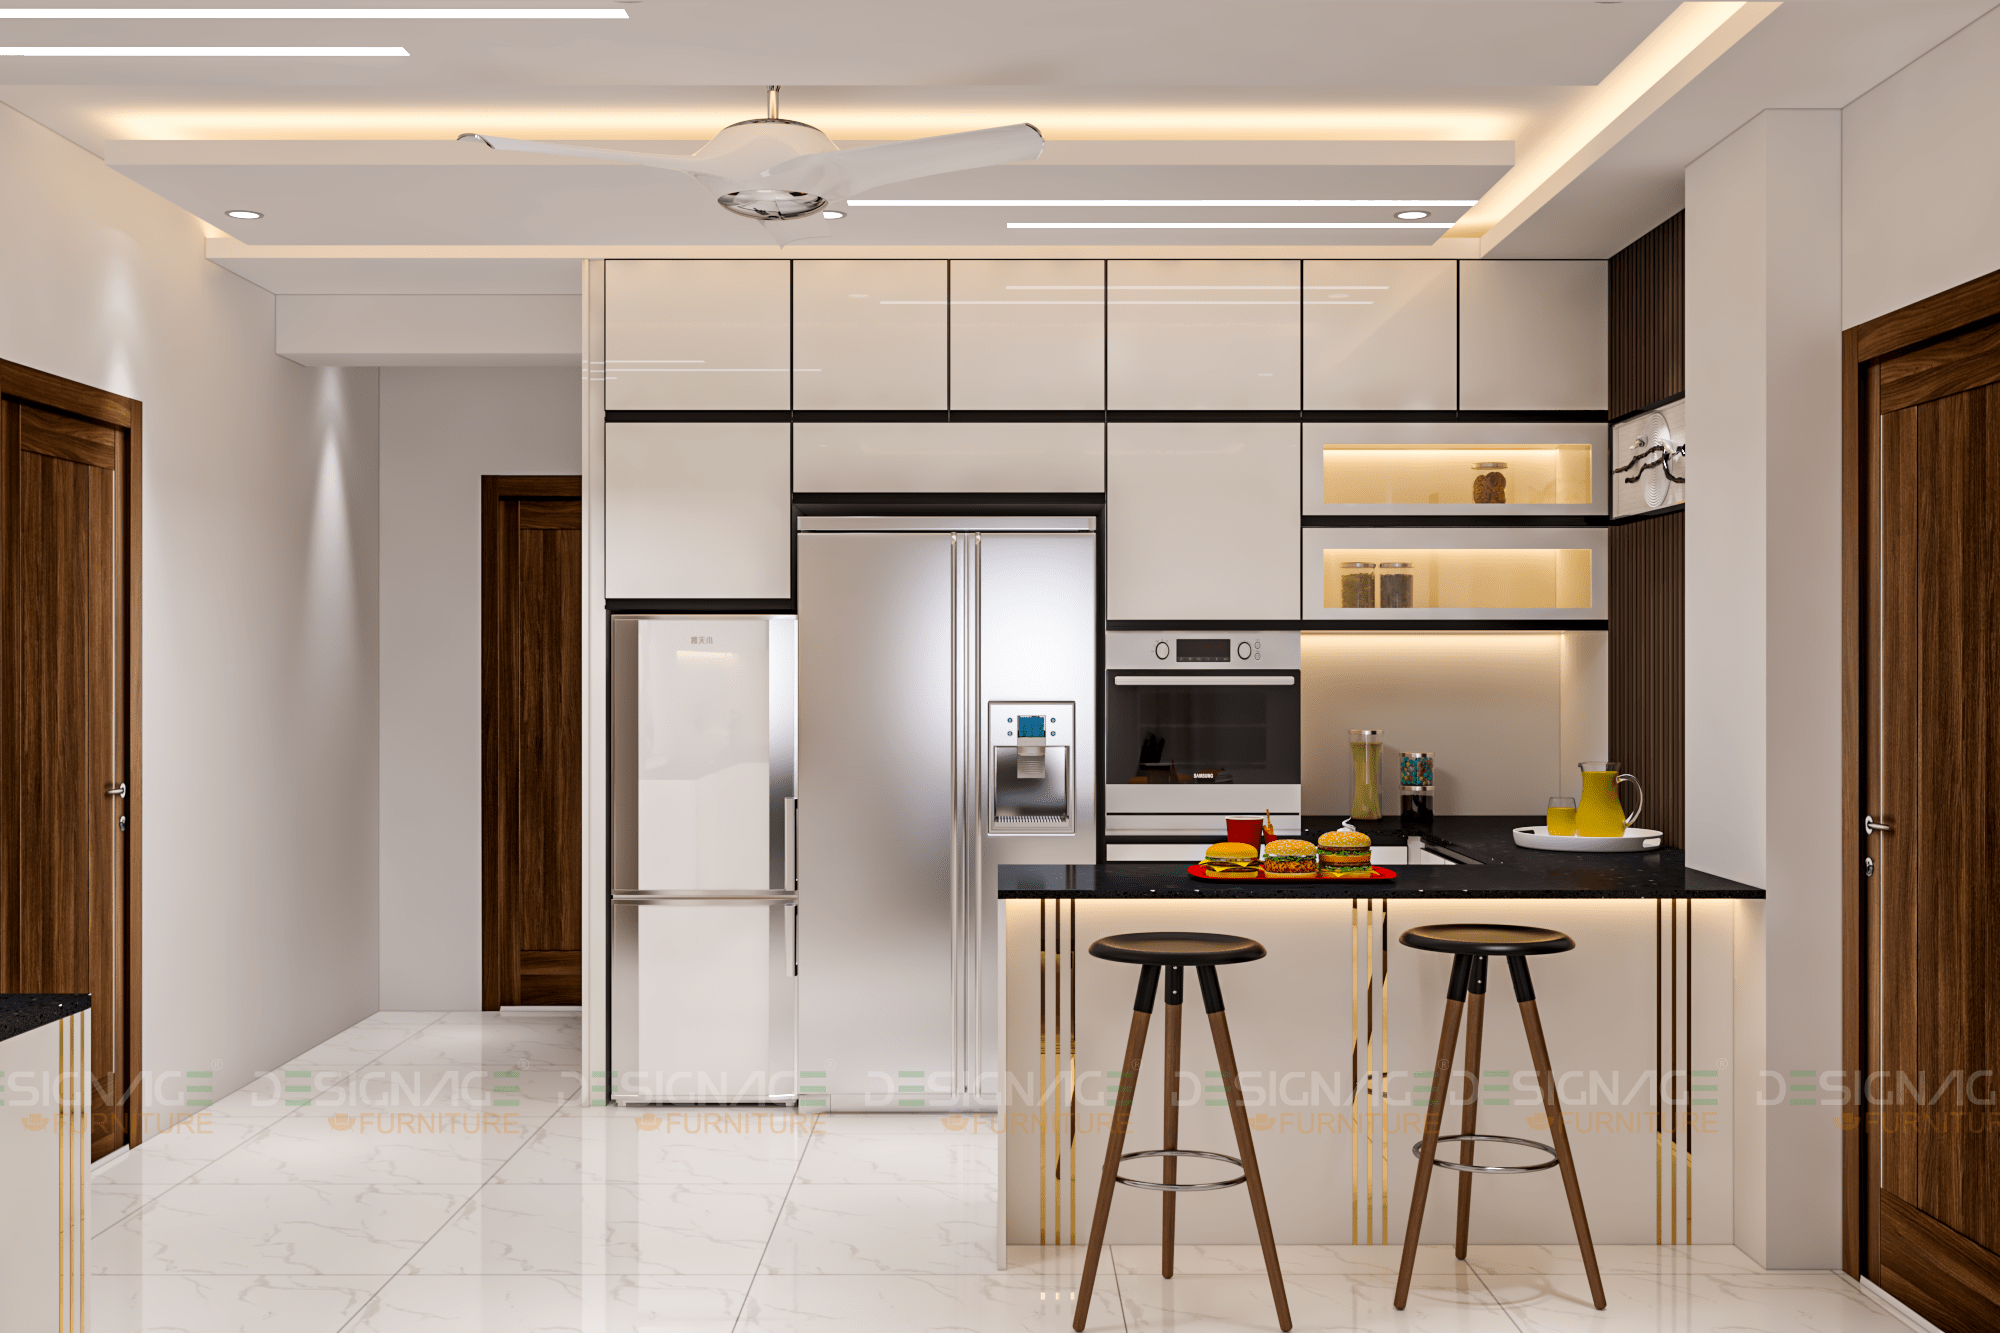 Home Interior Kitchen Cabinet Design In